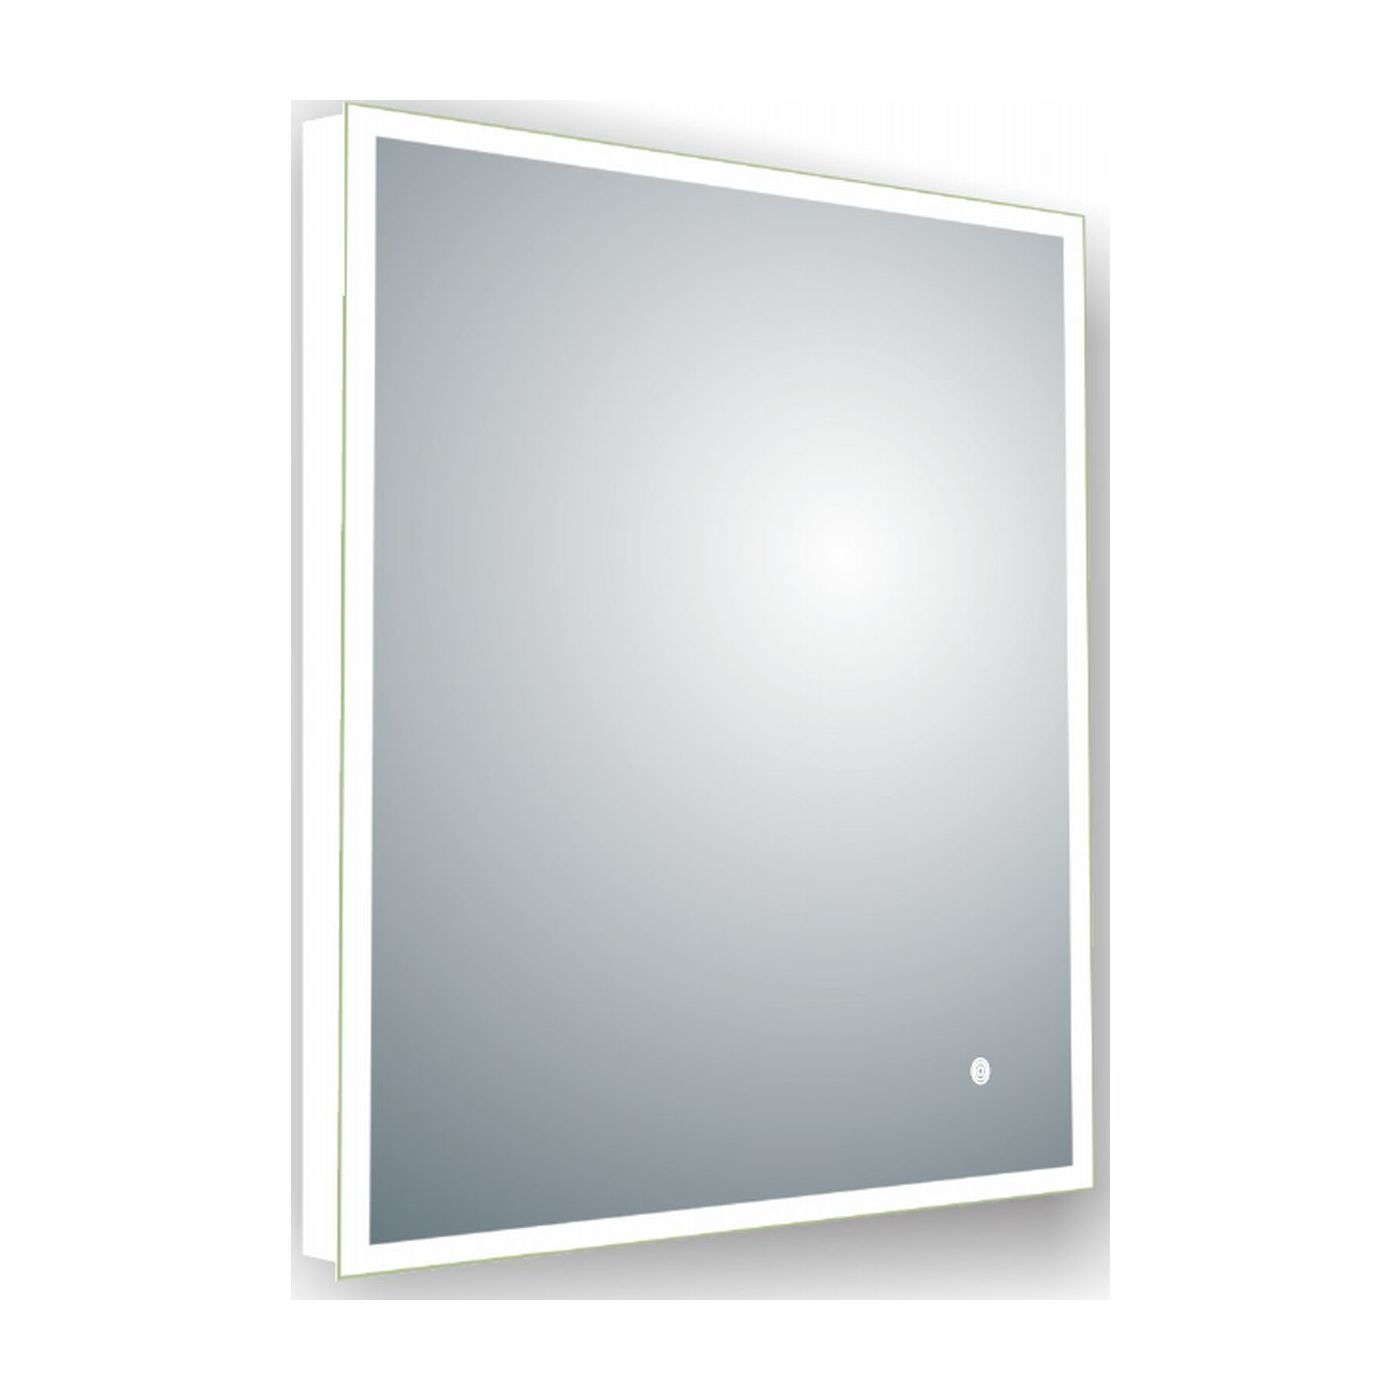 Neuer Clash LED spiegel 60x80